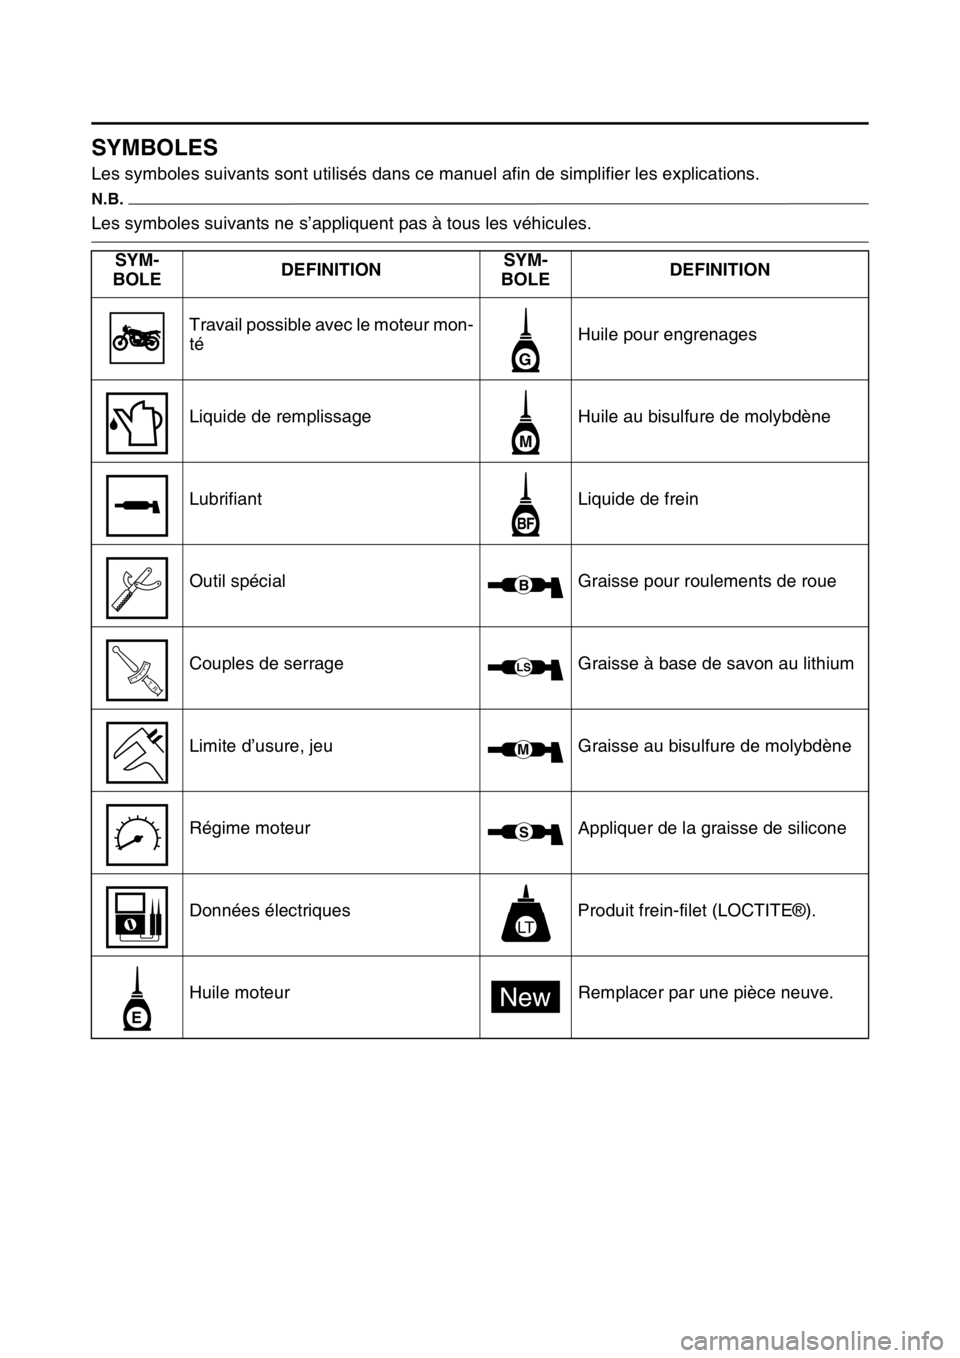 YAMAHA YZ450F 2015  Notices Demploi (in French) FAS1SL5007
SYMBOLES
Les symboles suivants sont utilisés dans ce manuel afin de simplifier les explications.
N.B.
Les symboles suivants ne s’appliquent pas à tous les véhicules.
SYM-
BOLEDEFINITIO